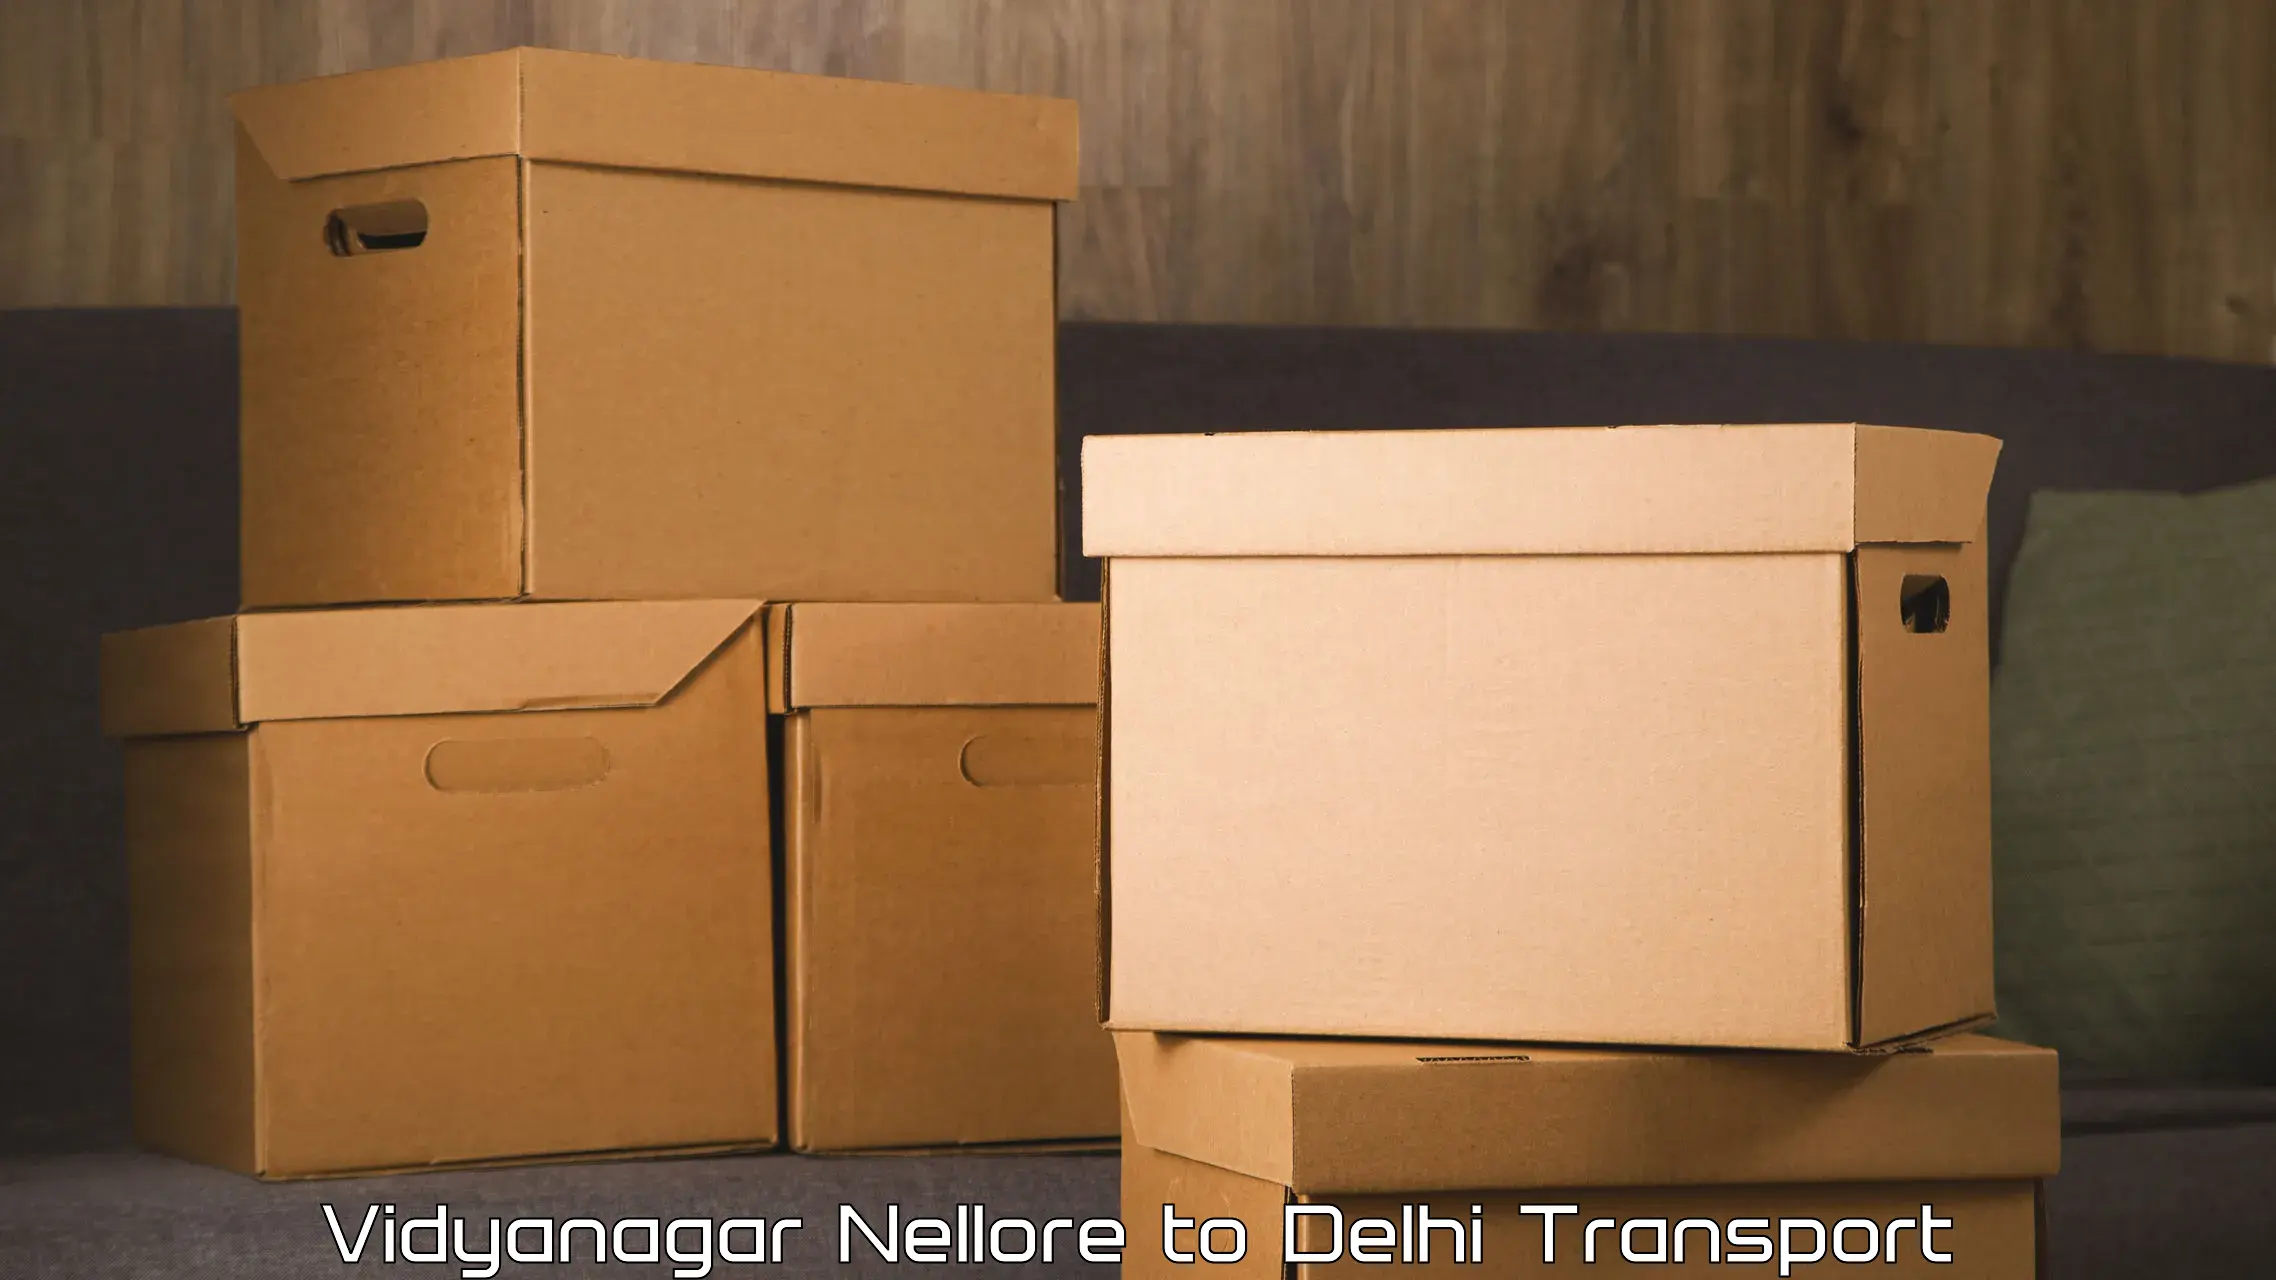 Interstate transport services Vidyanagar Nellore to IIT Delhi